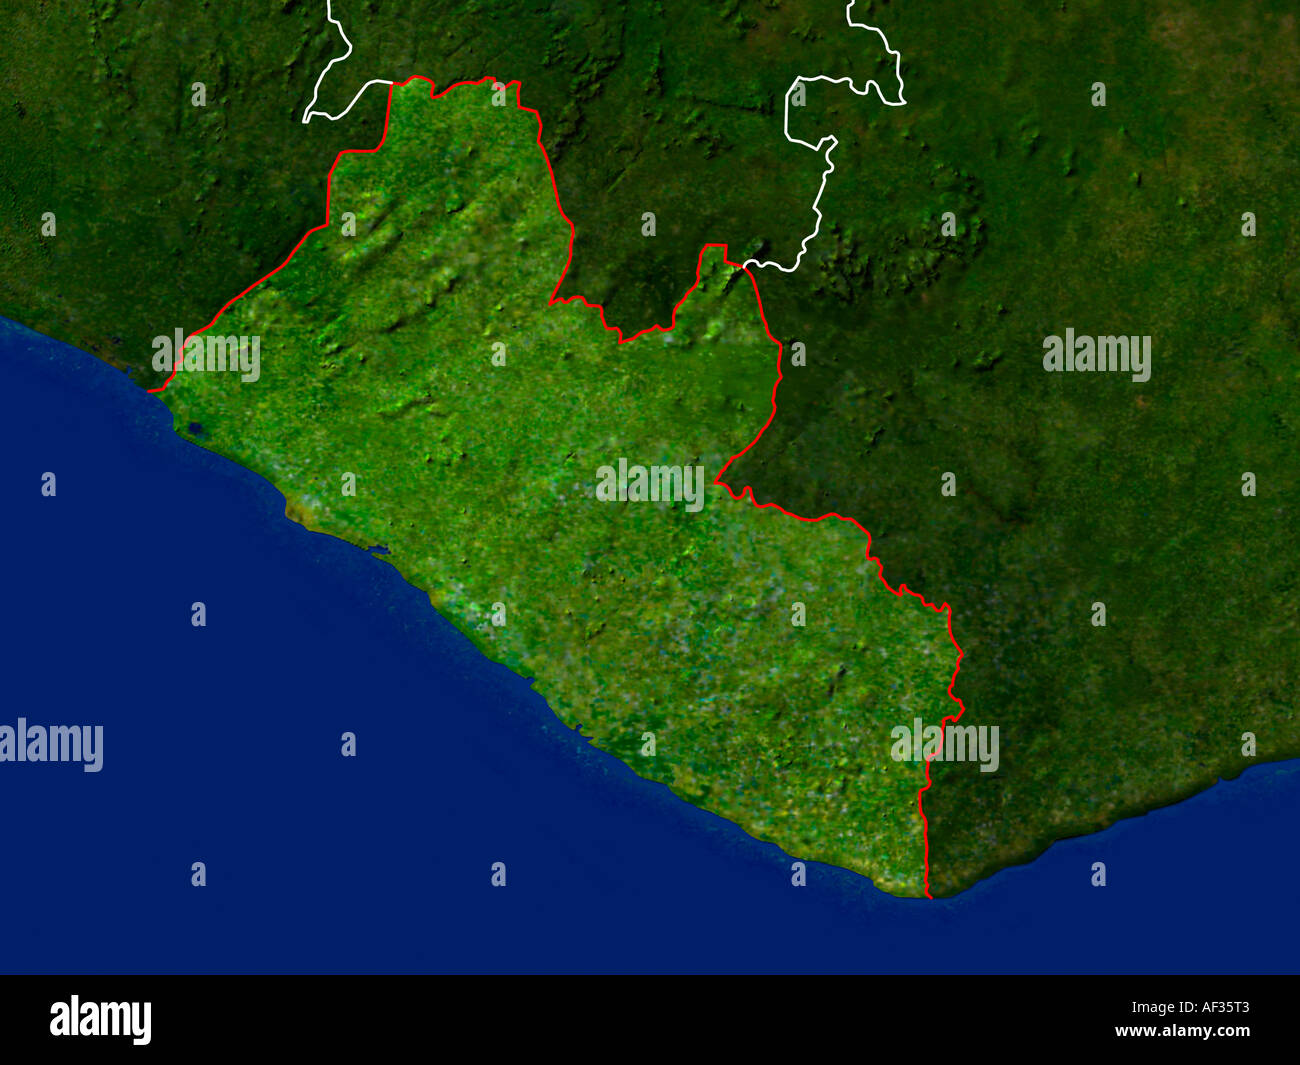 Ha evidenziato un'immagine satellitare della Liberia che mostra il paese i confini dell Foto Stock